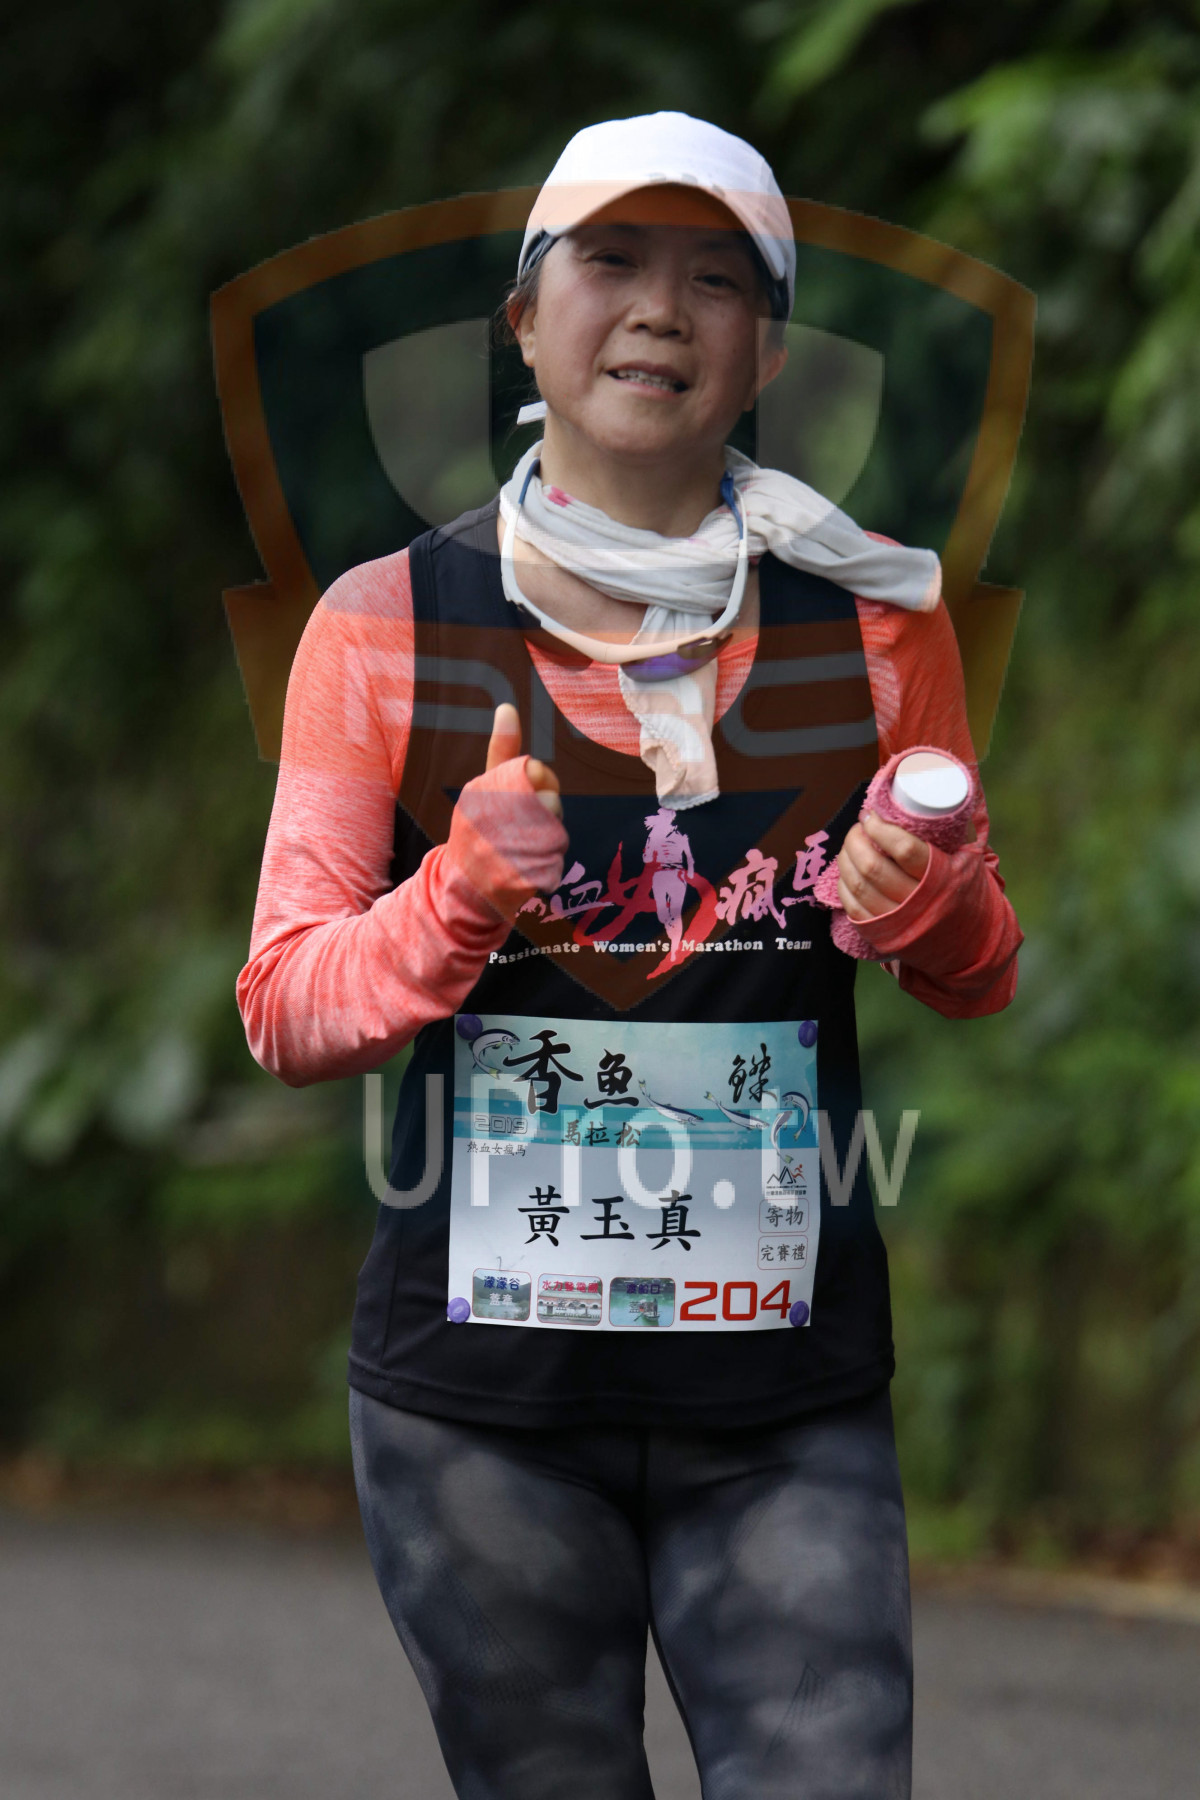 nate Women's Marathon Team,,,,,,,,204,G|